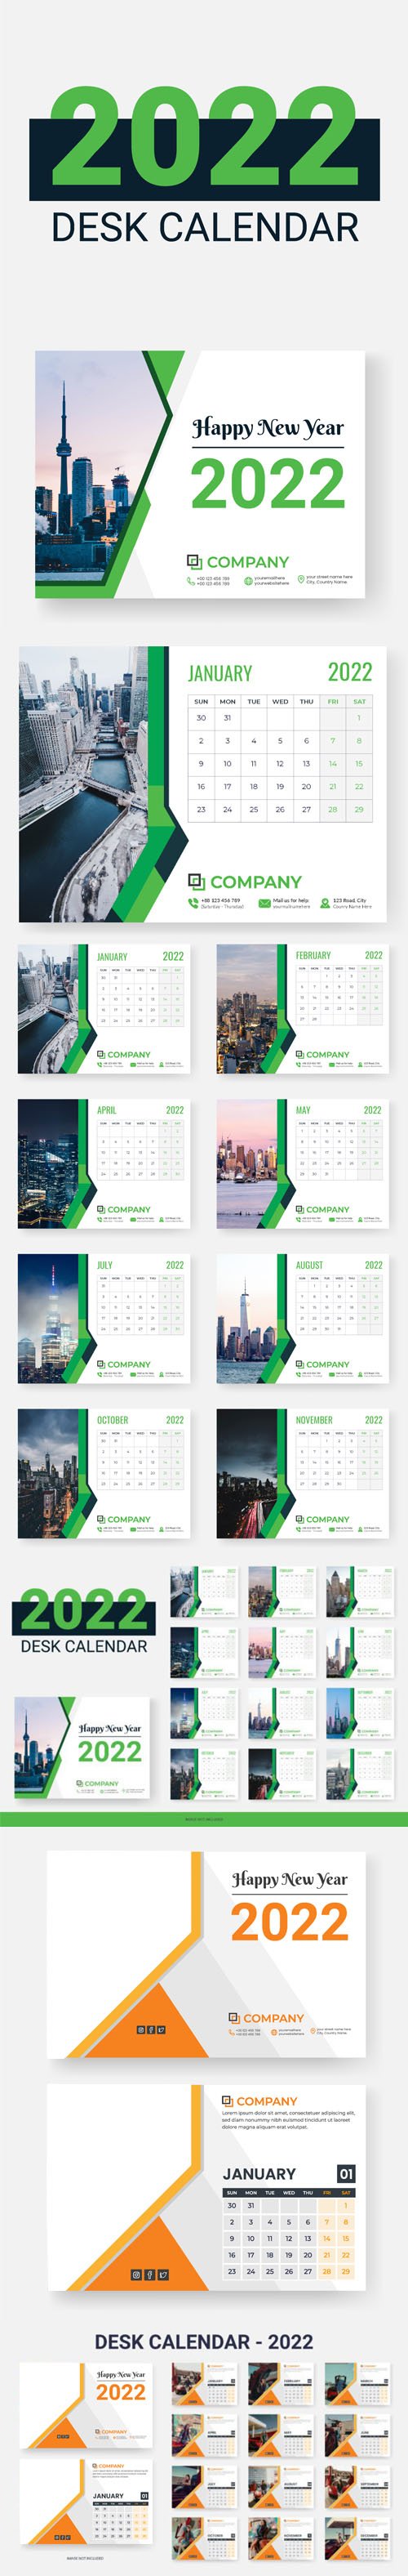 Two Desk Calendars 2022 Vector Design Templates